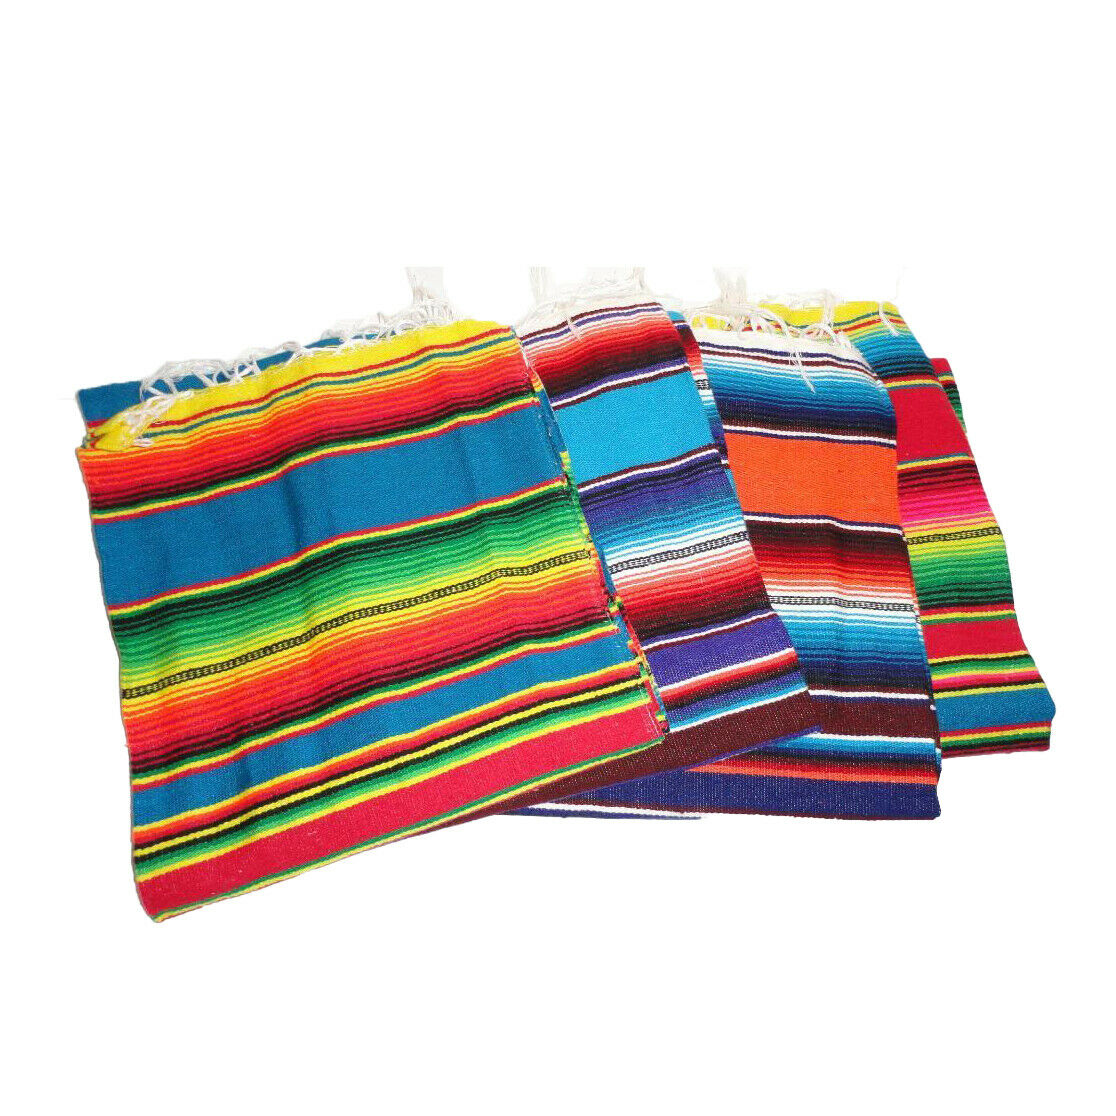 Sarape Serape Mexican Blanket, Saltillo Southwestern 55 X 22 Inches